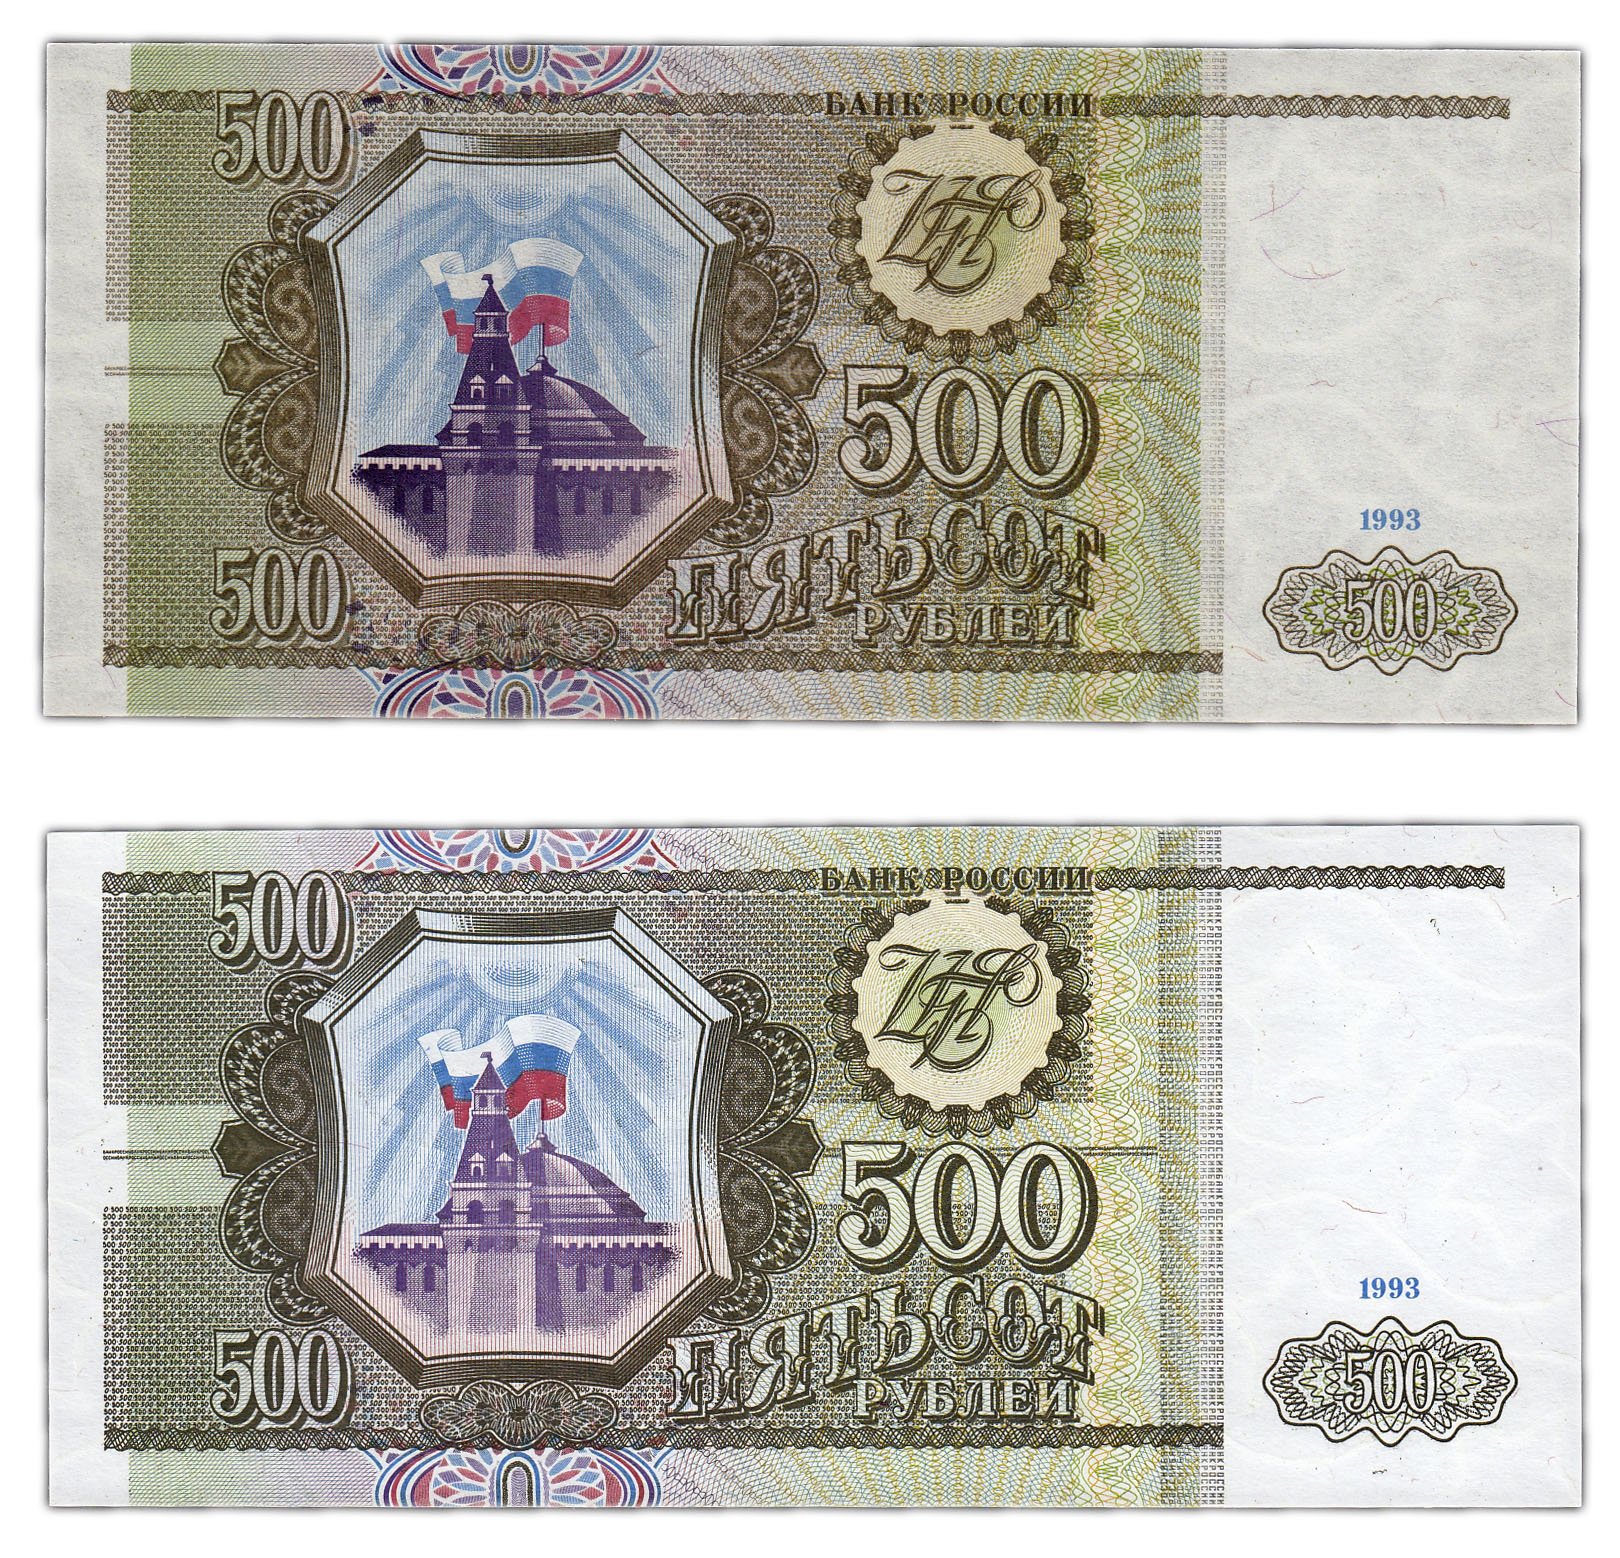 500 рублей 1993 цена. 500 Рублей 1993. 500 Рублей 1993 года. Пятьсот рублей 1993. 500 Рублей 1993 года бумажные.